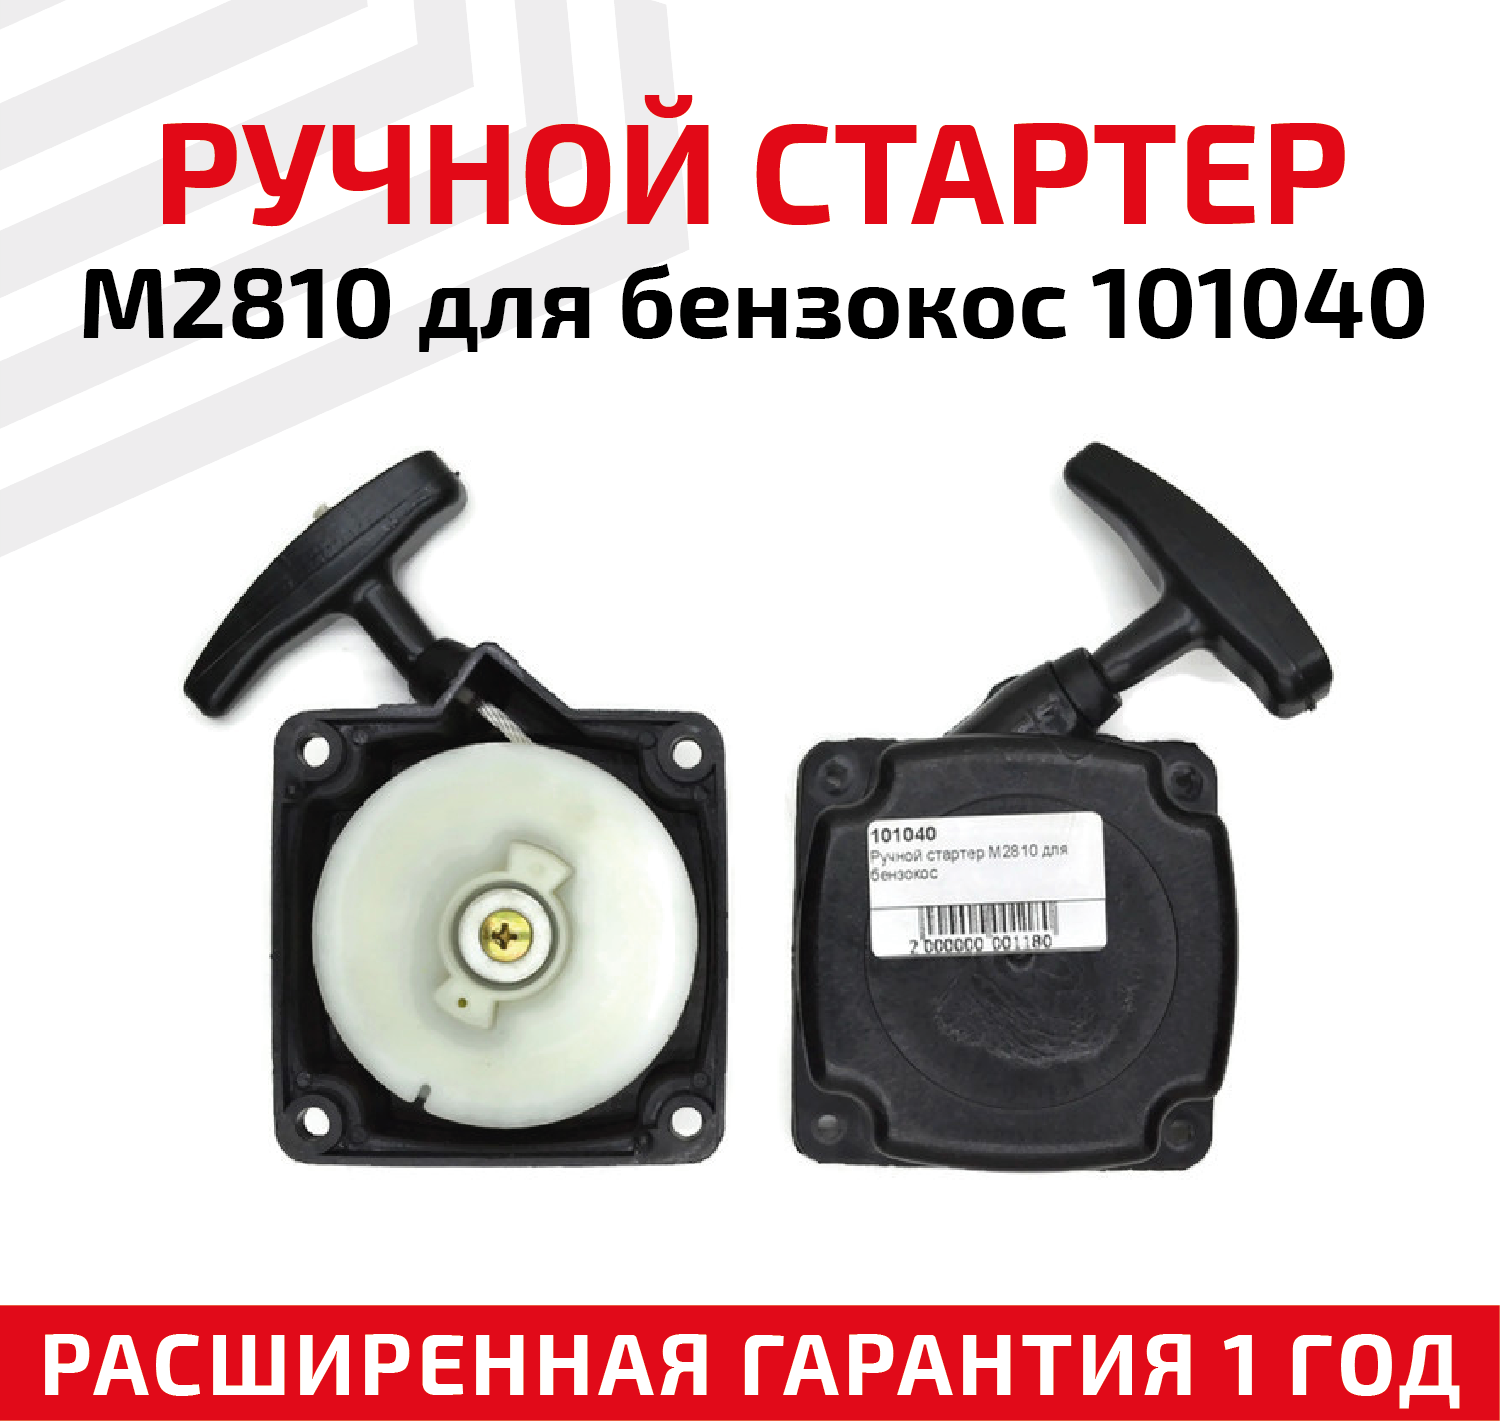 Ручной стартер M2810 для бензокос 101040